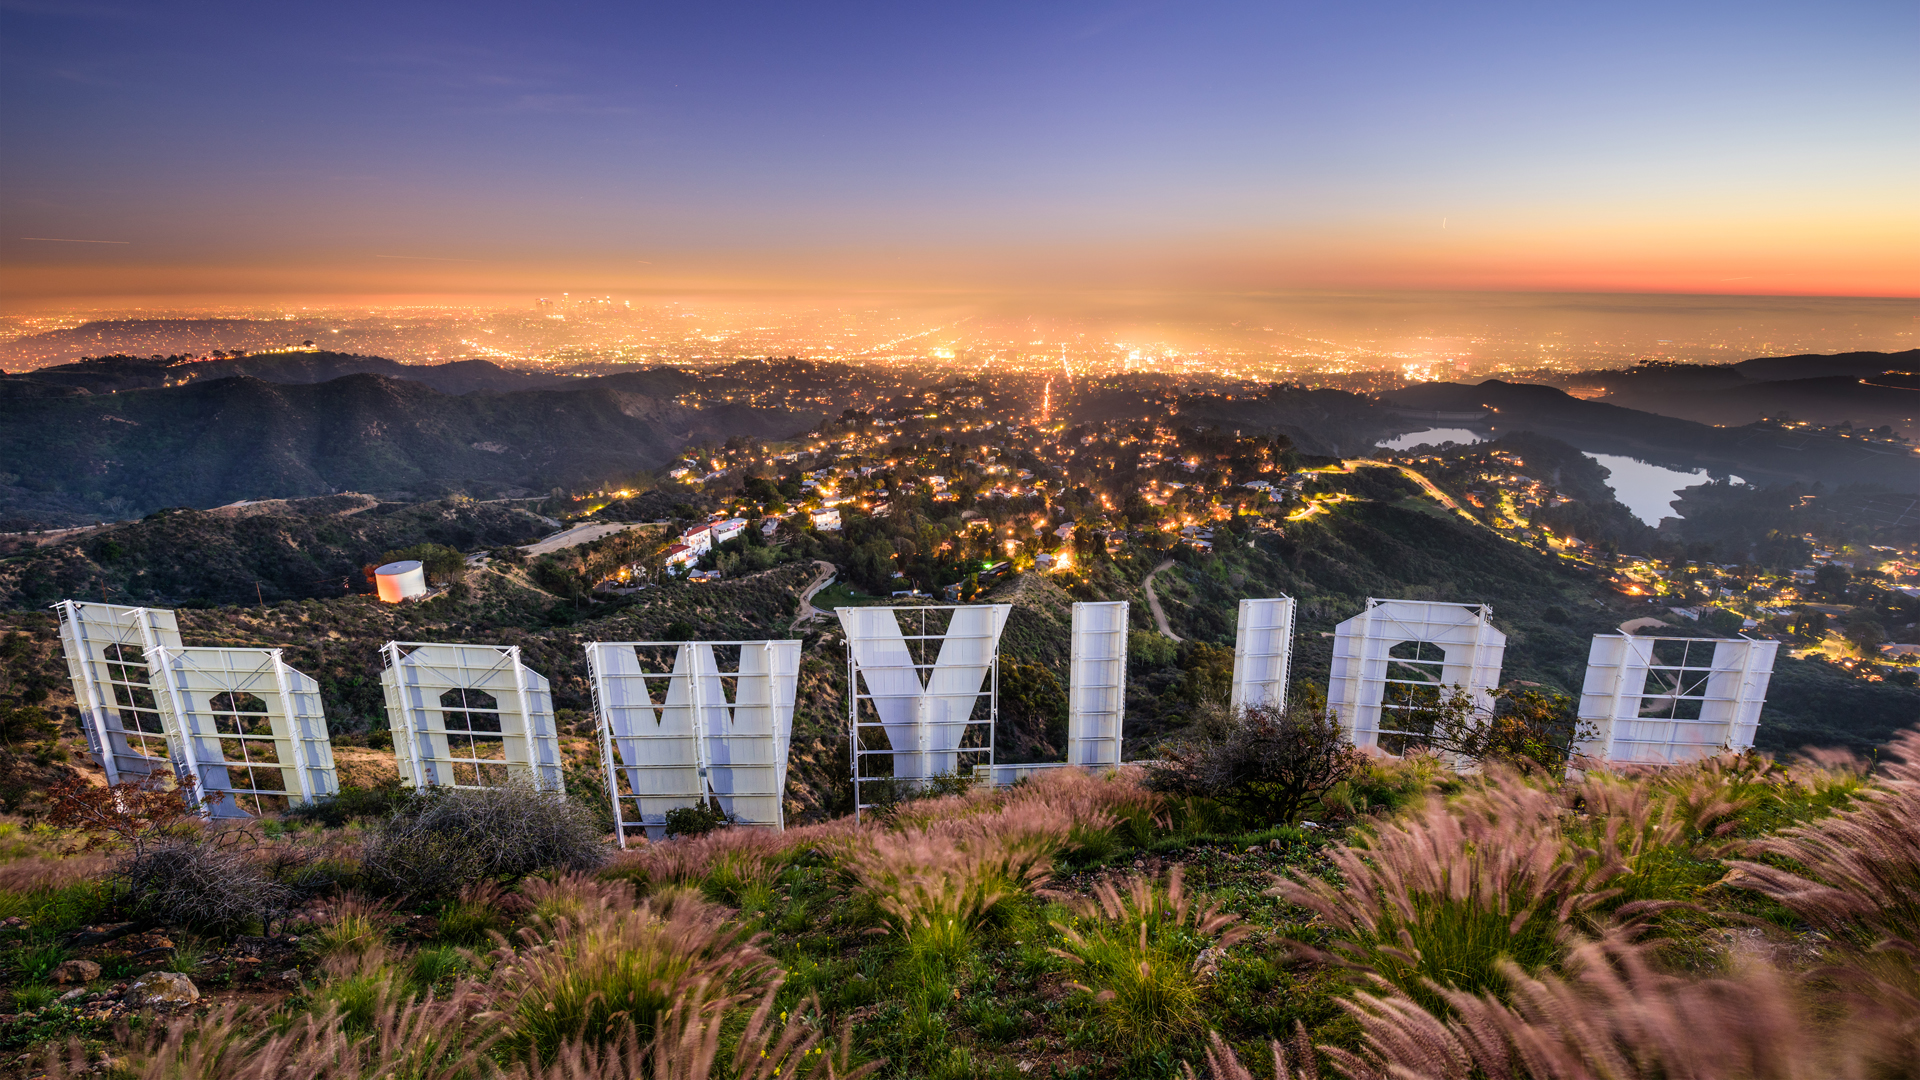 El cartel de Hollywood en Los Angeles (iStock)